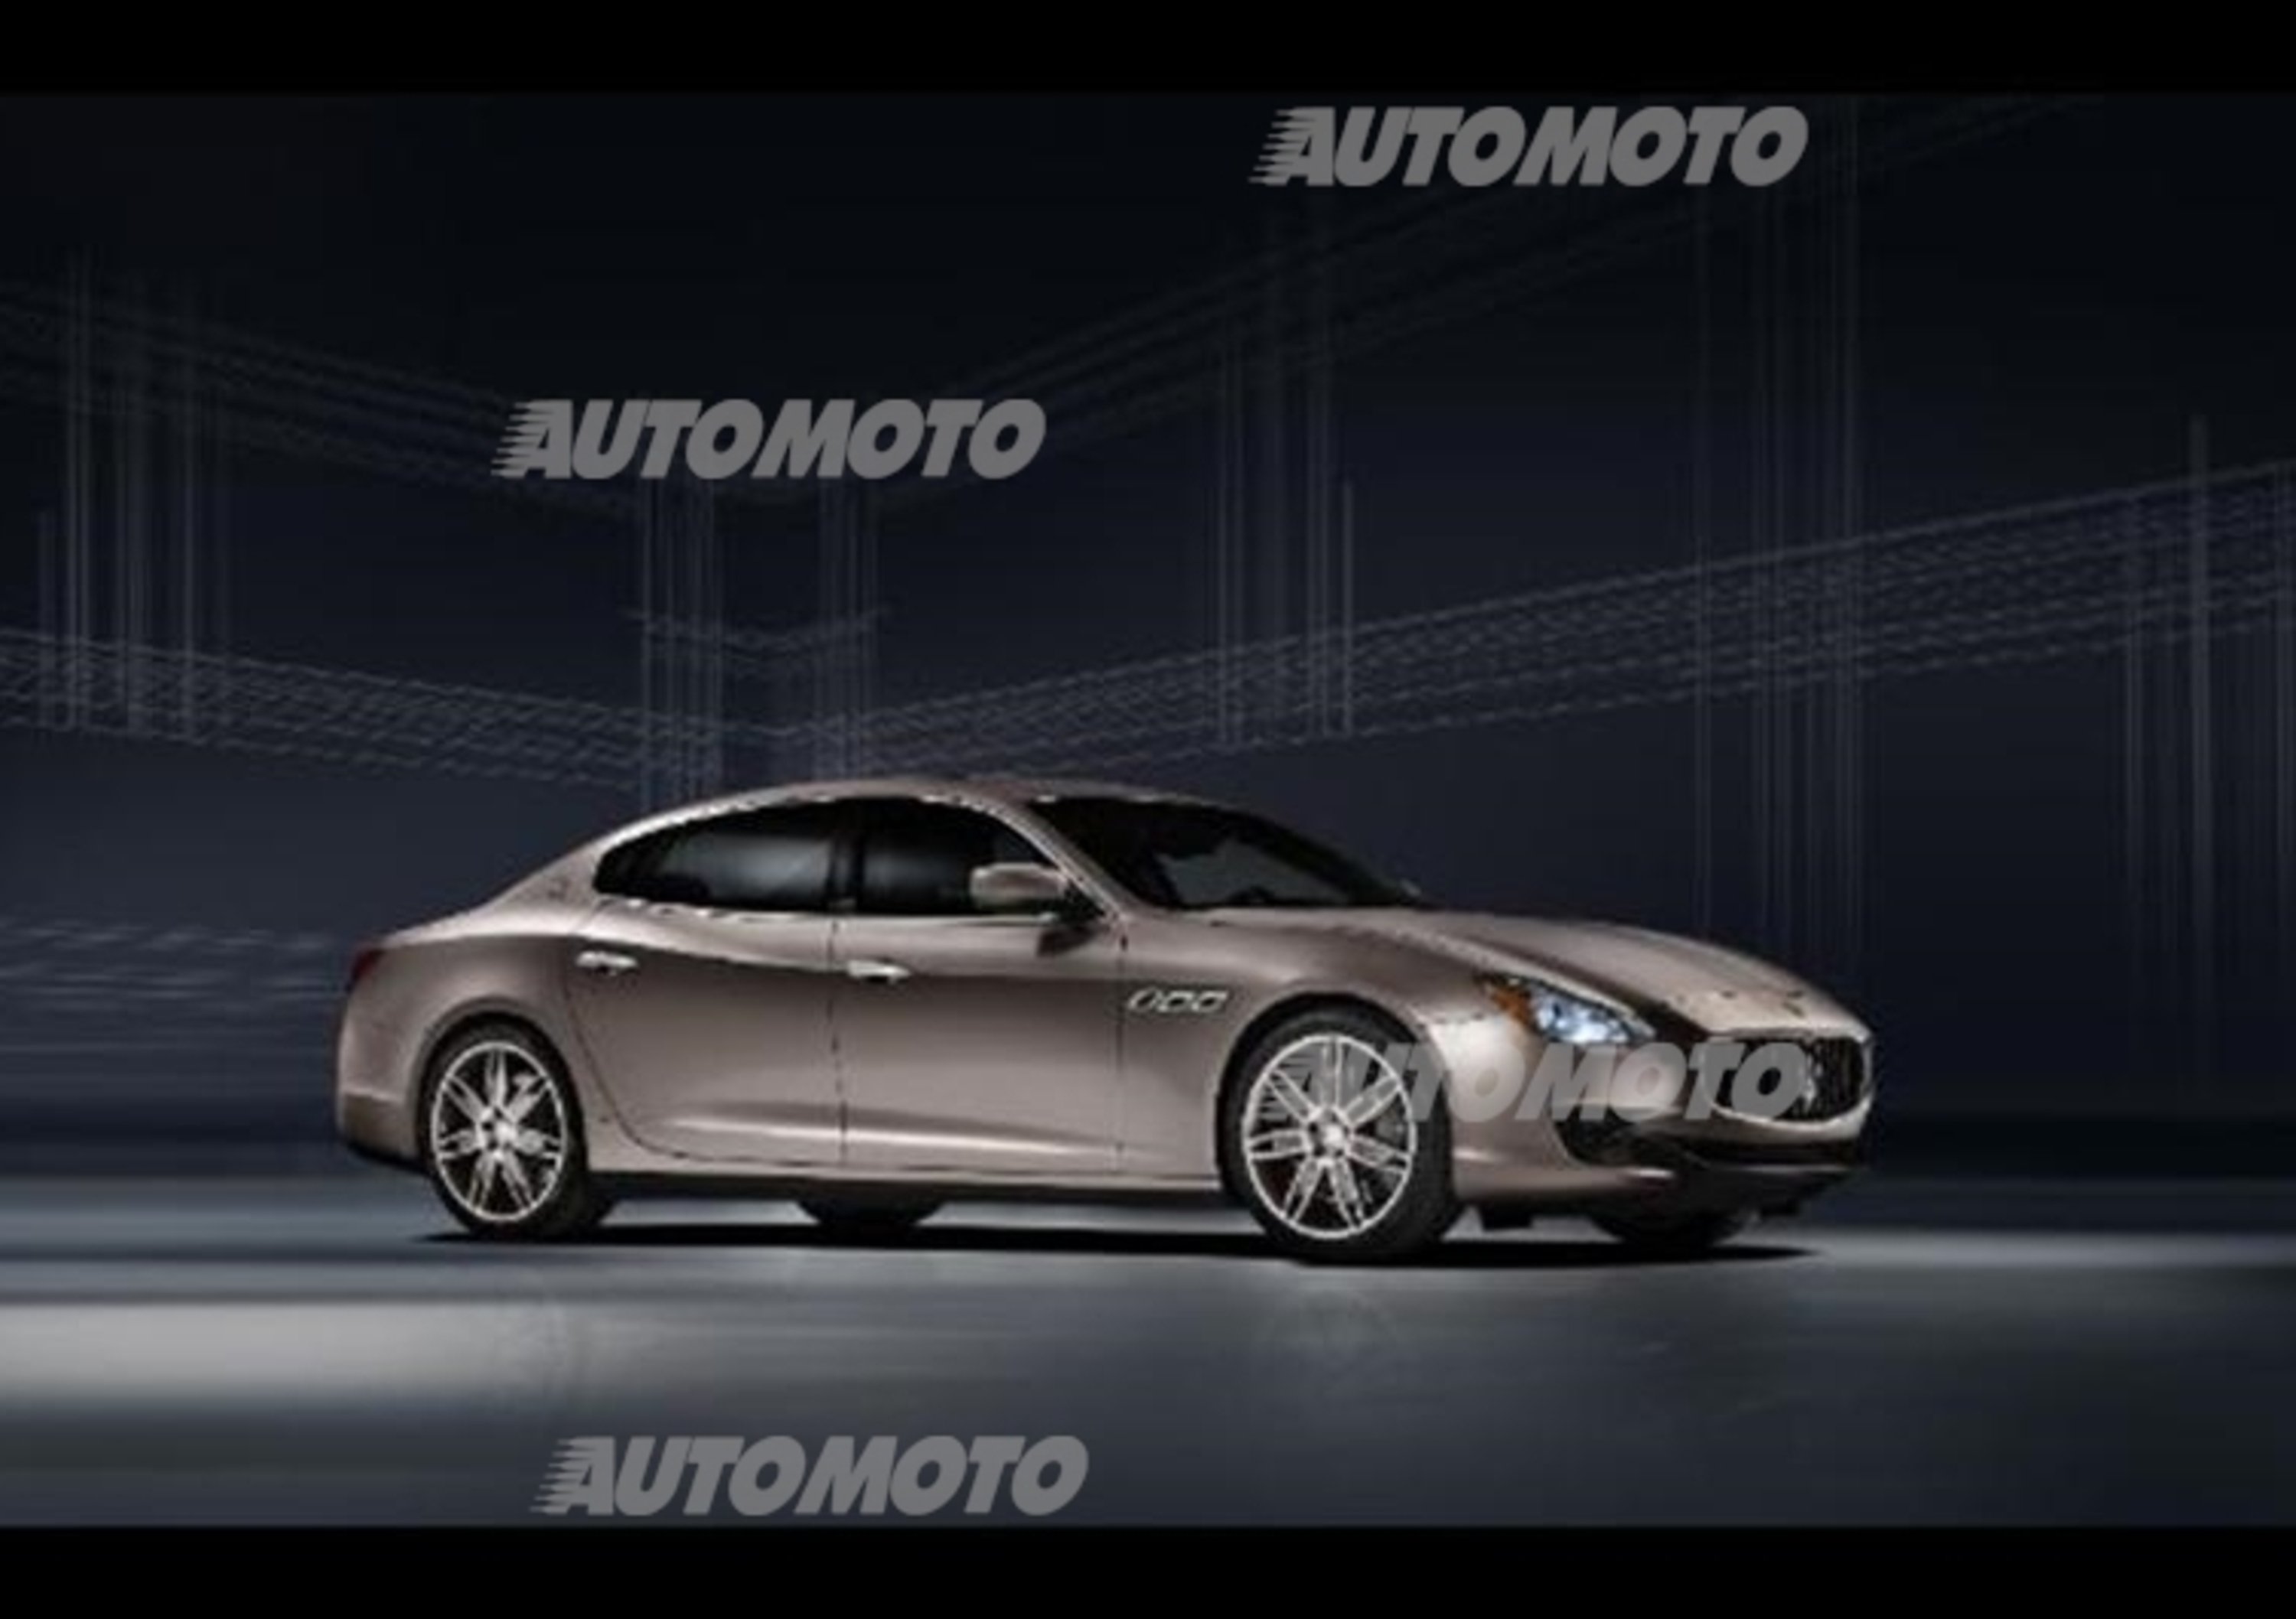 Maserati Quattroporte Ermenegildo Zegna Limited Edition concept